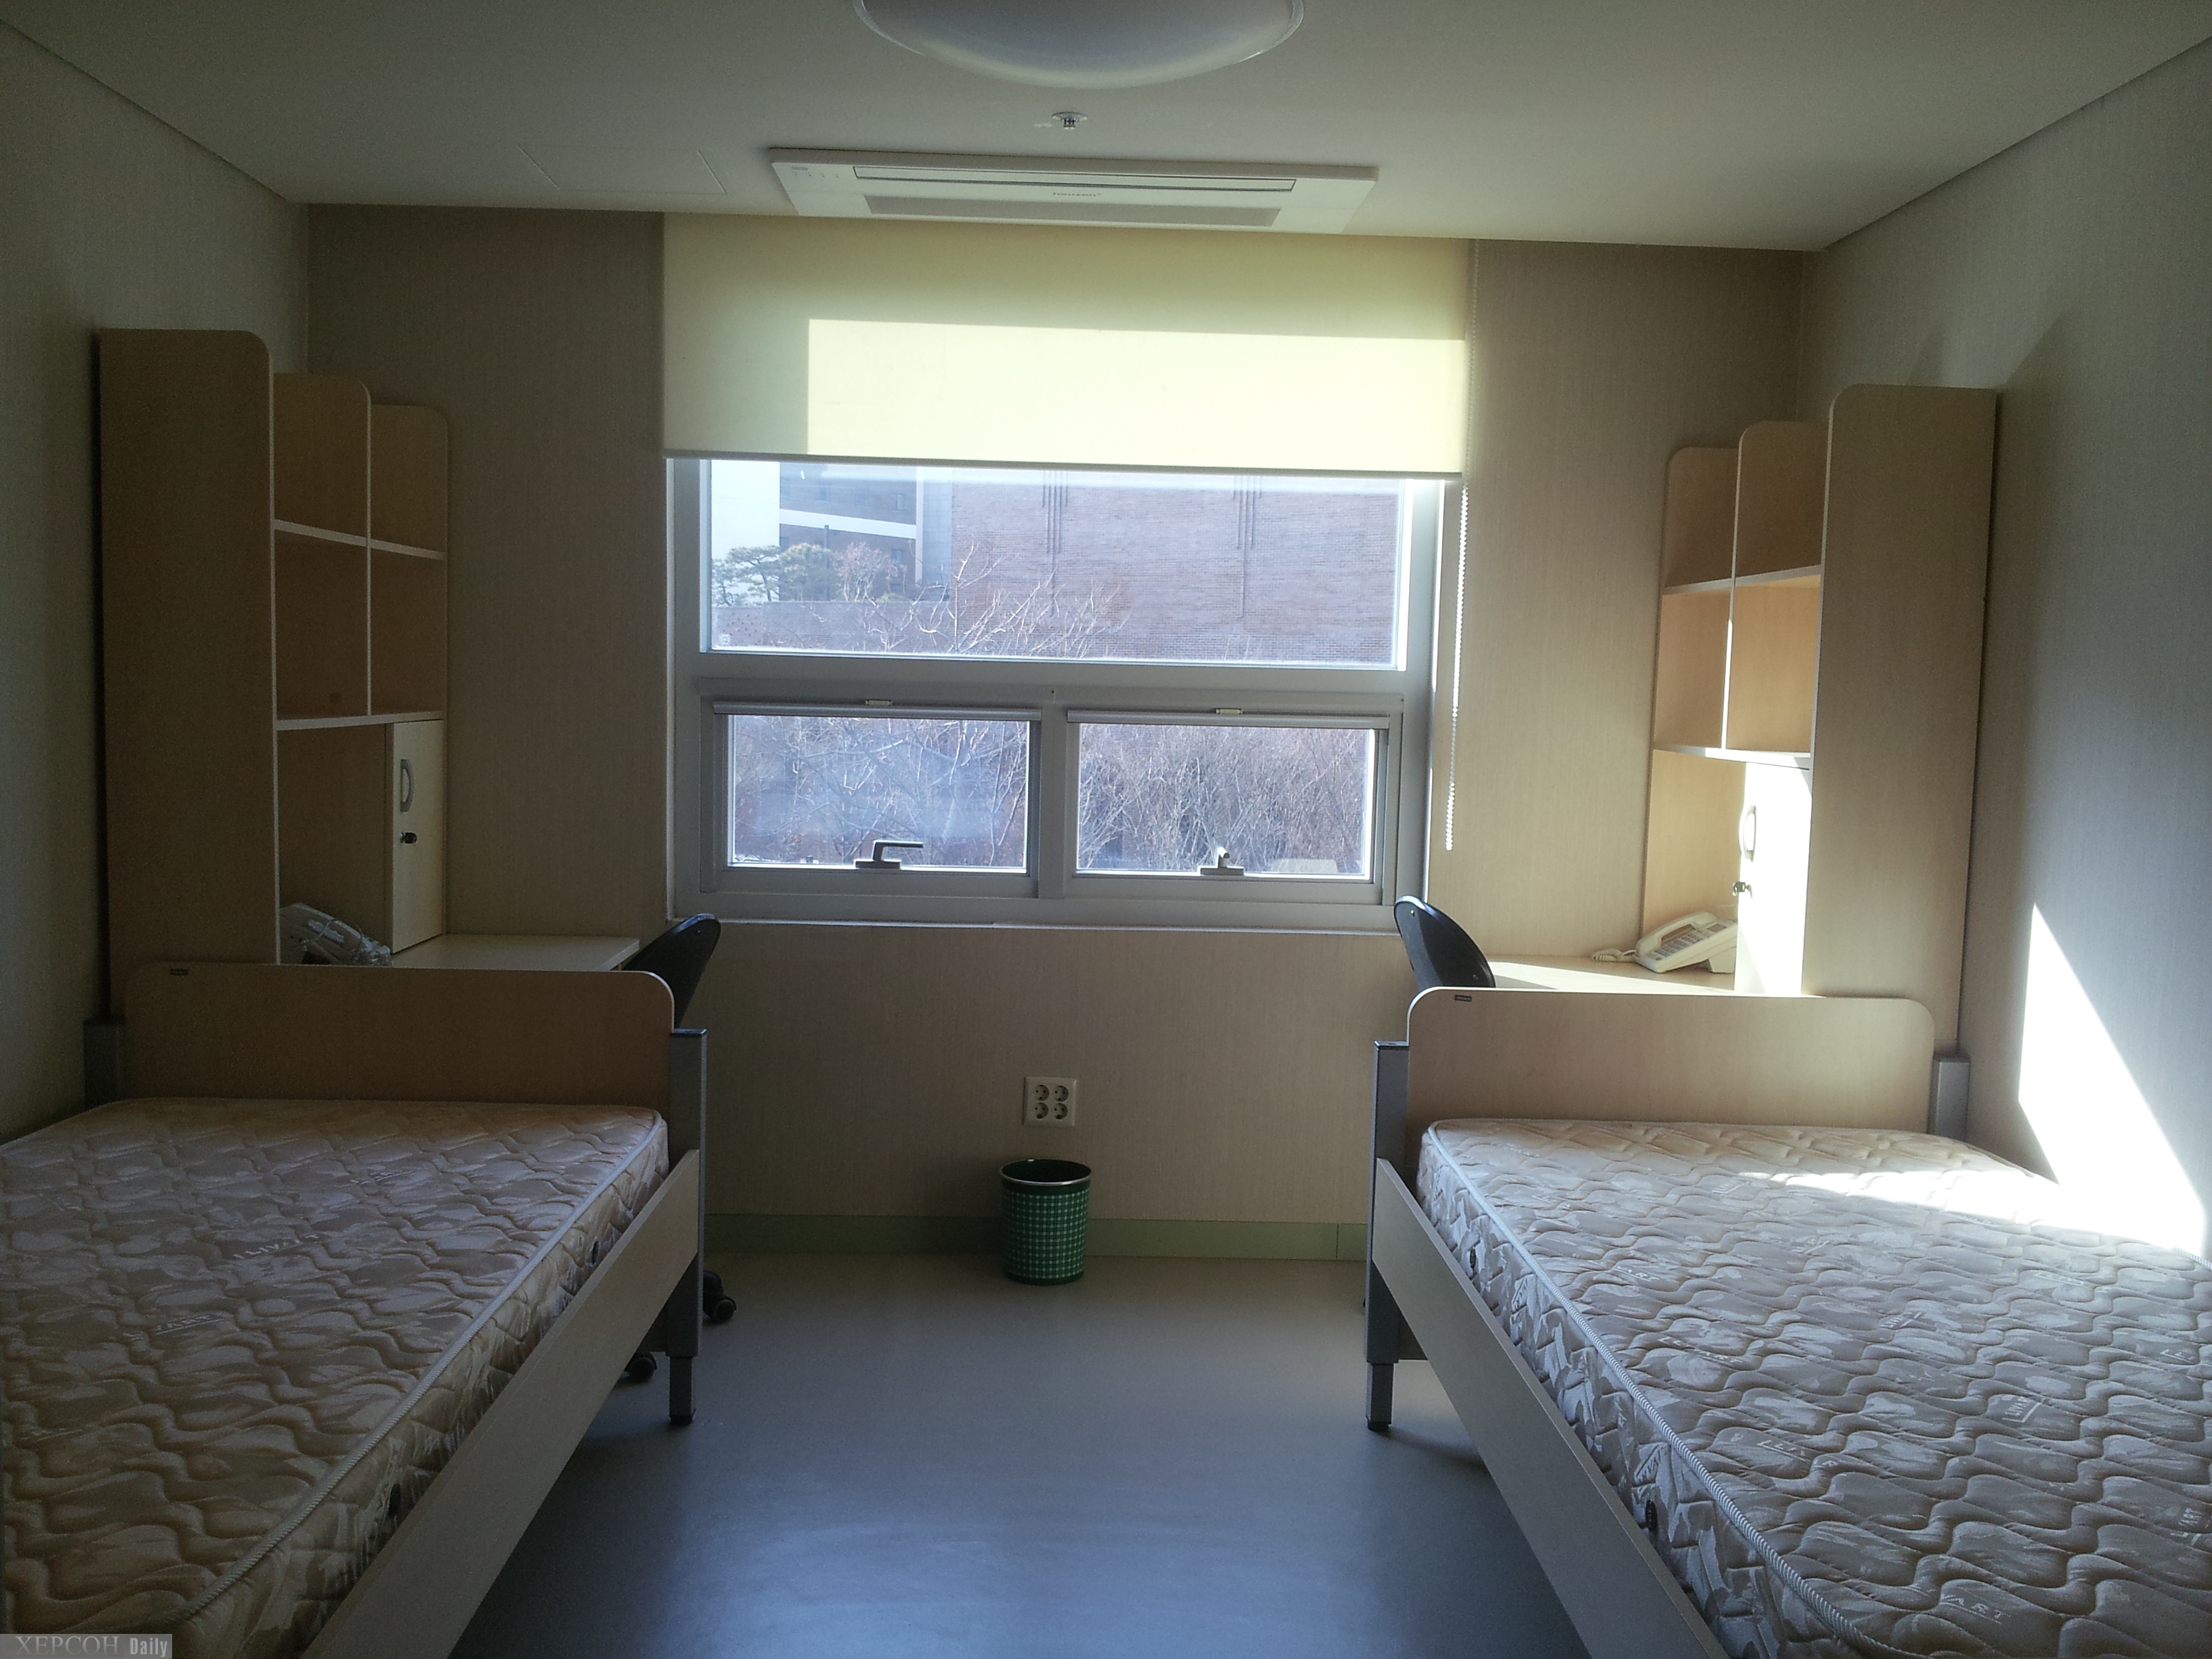 Ютуб общежитие. Комната в общежитии. Спальня в общежитии. Комната в студенческом общежитии. Комната в общежитии на двоих.